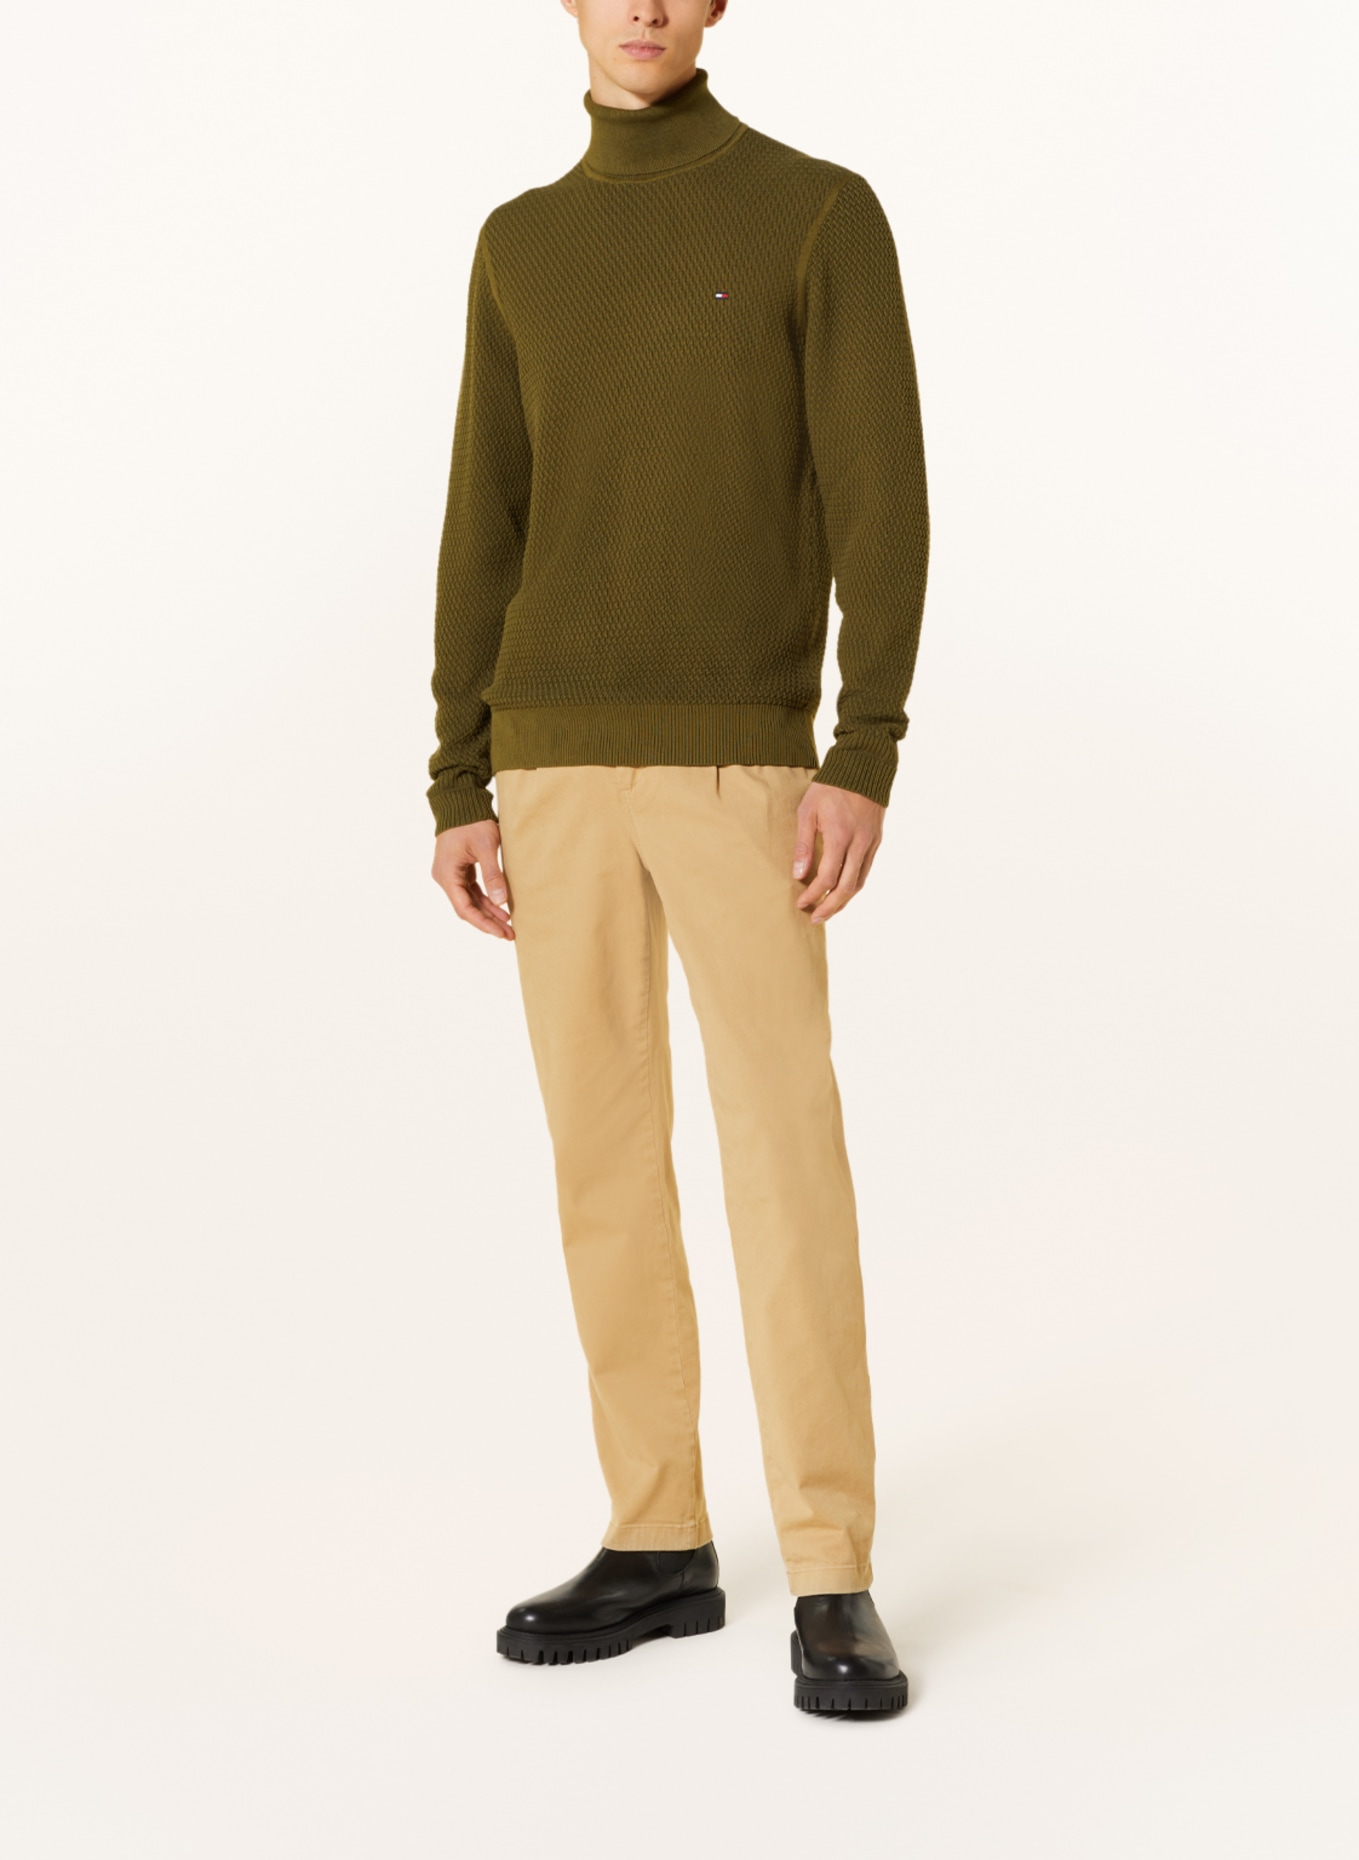 TOMMY HILFIGER Turtleneck sweater, Color: OLIVE (Image 2)